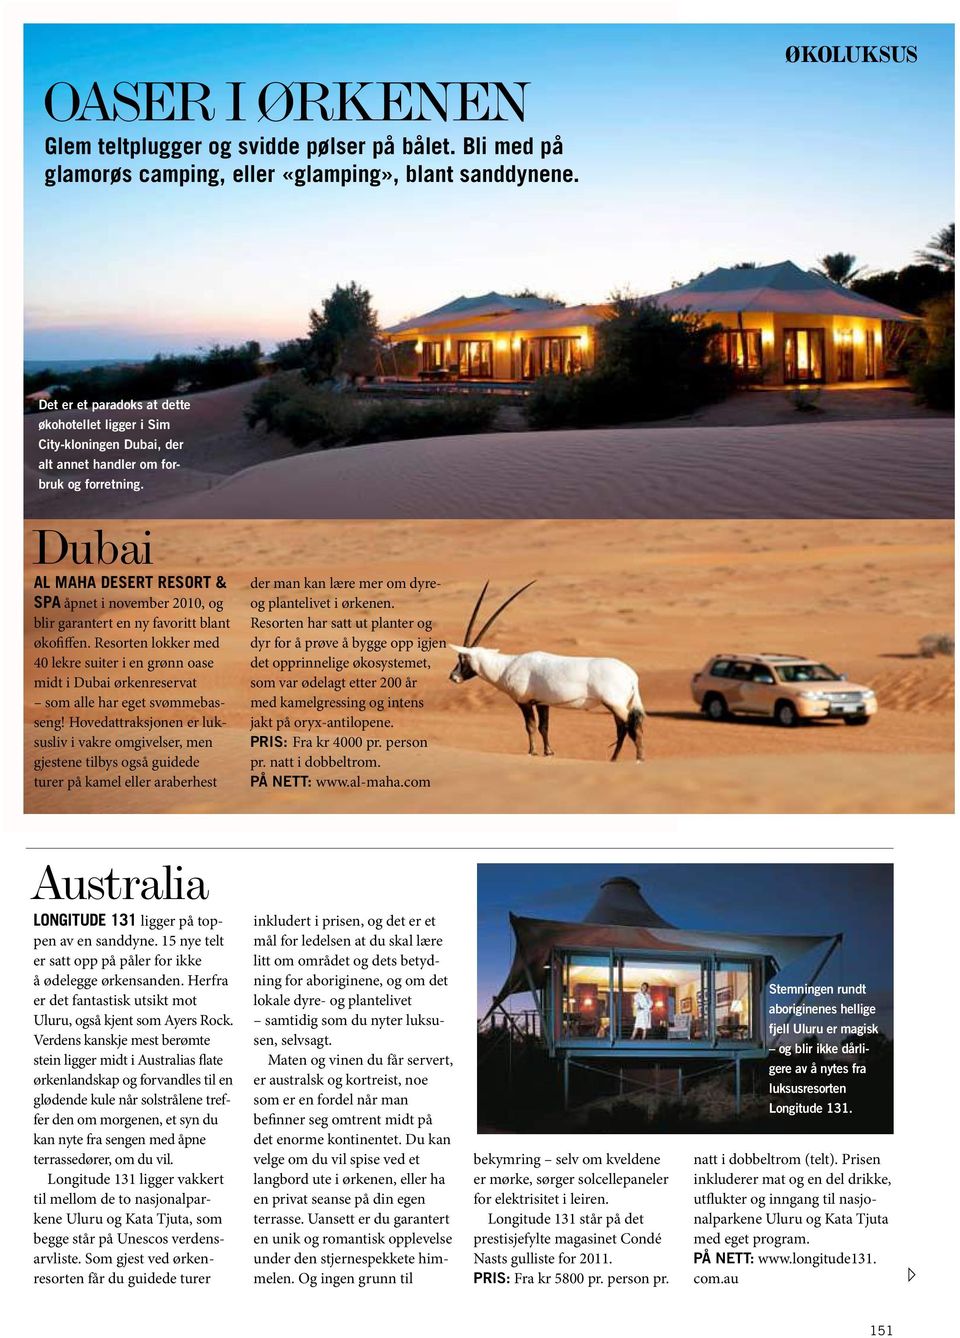 Dubai Al Maha Desert Resort & Spa åpnet i november 2010, og blir garantert en ny favoritt blant økofiffen.